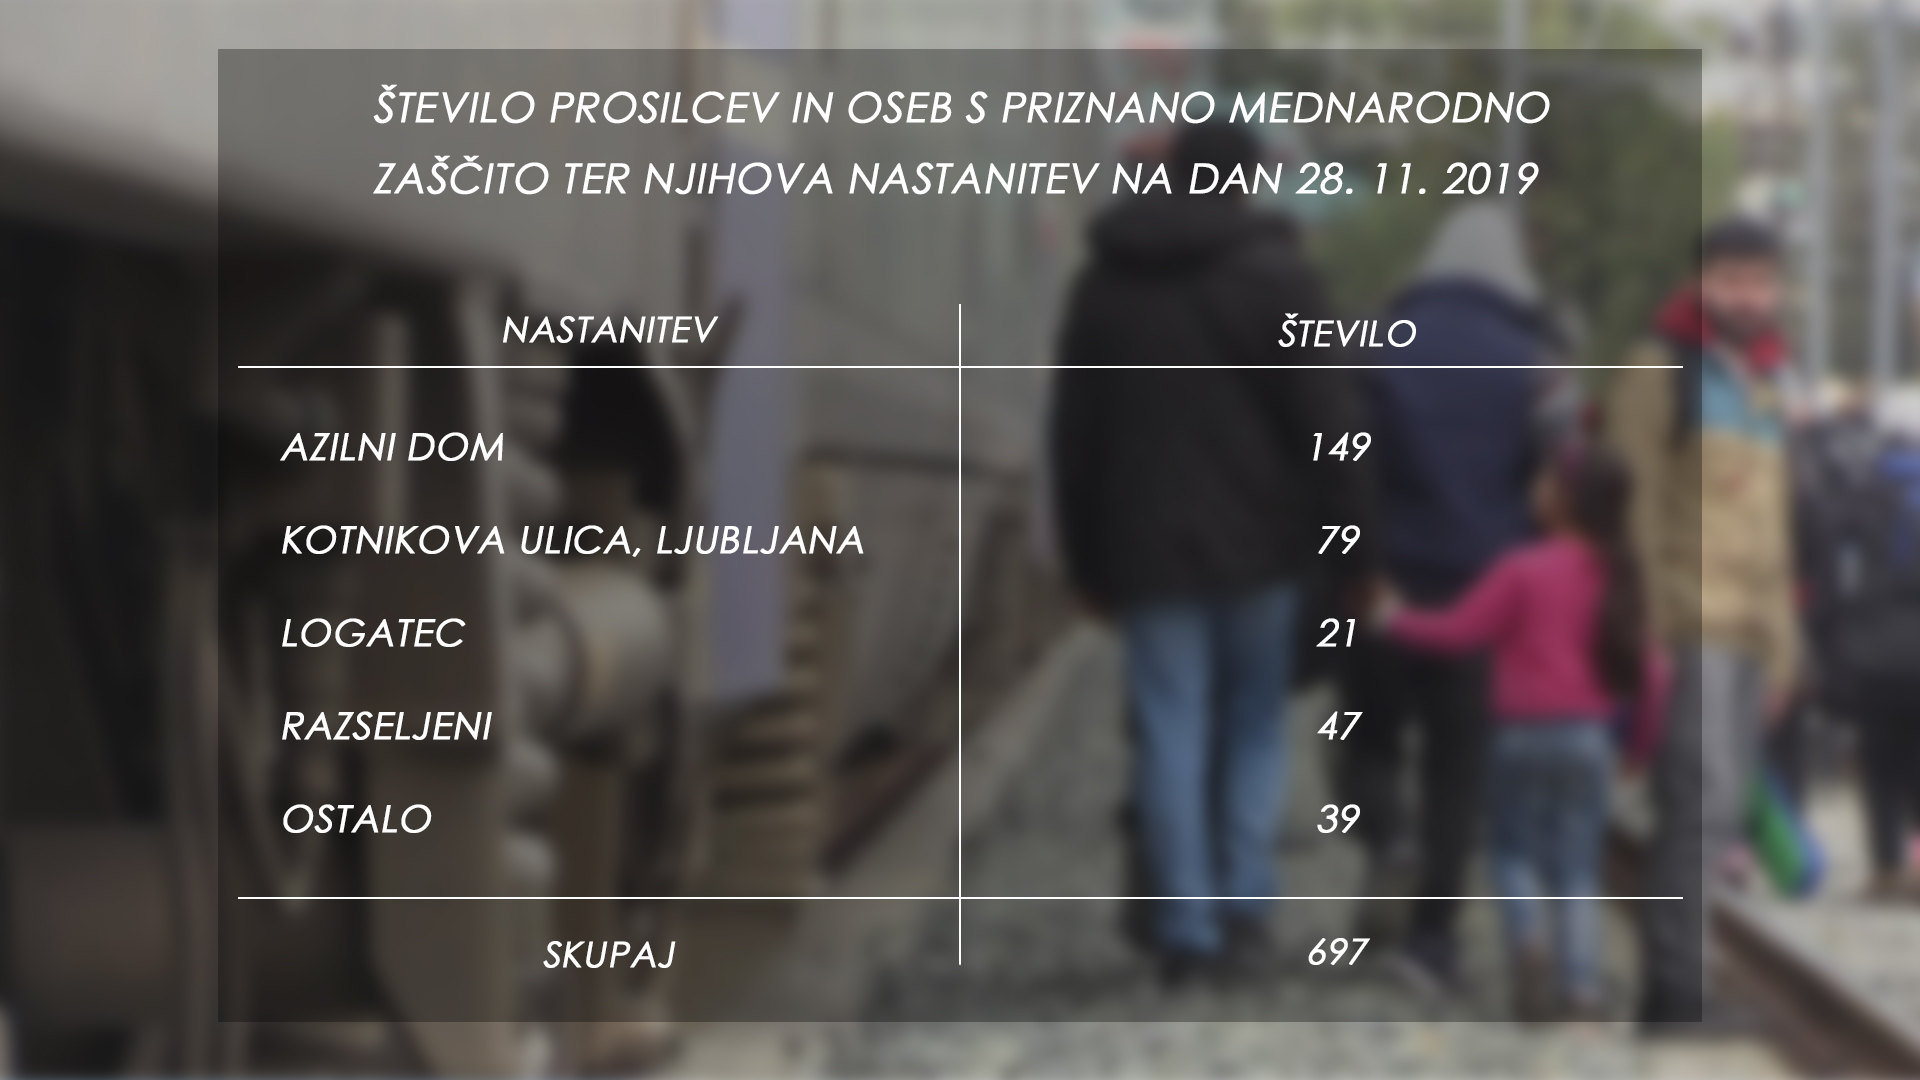 Število prosilcev in oseb s priznano mednarodno zaščito ter njihove nastanitev na dan 28.11.2019. (Foto: MNZ, Nova24tv)